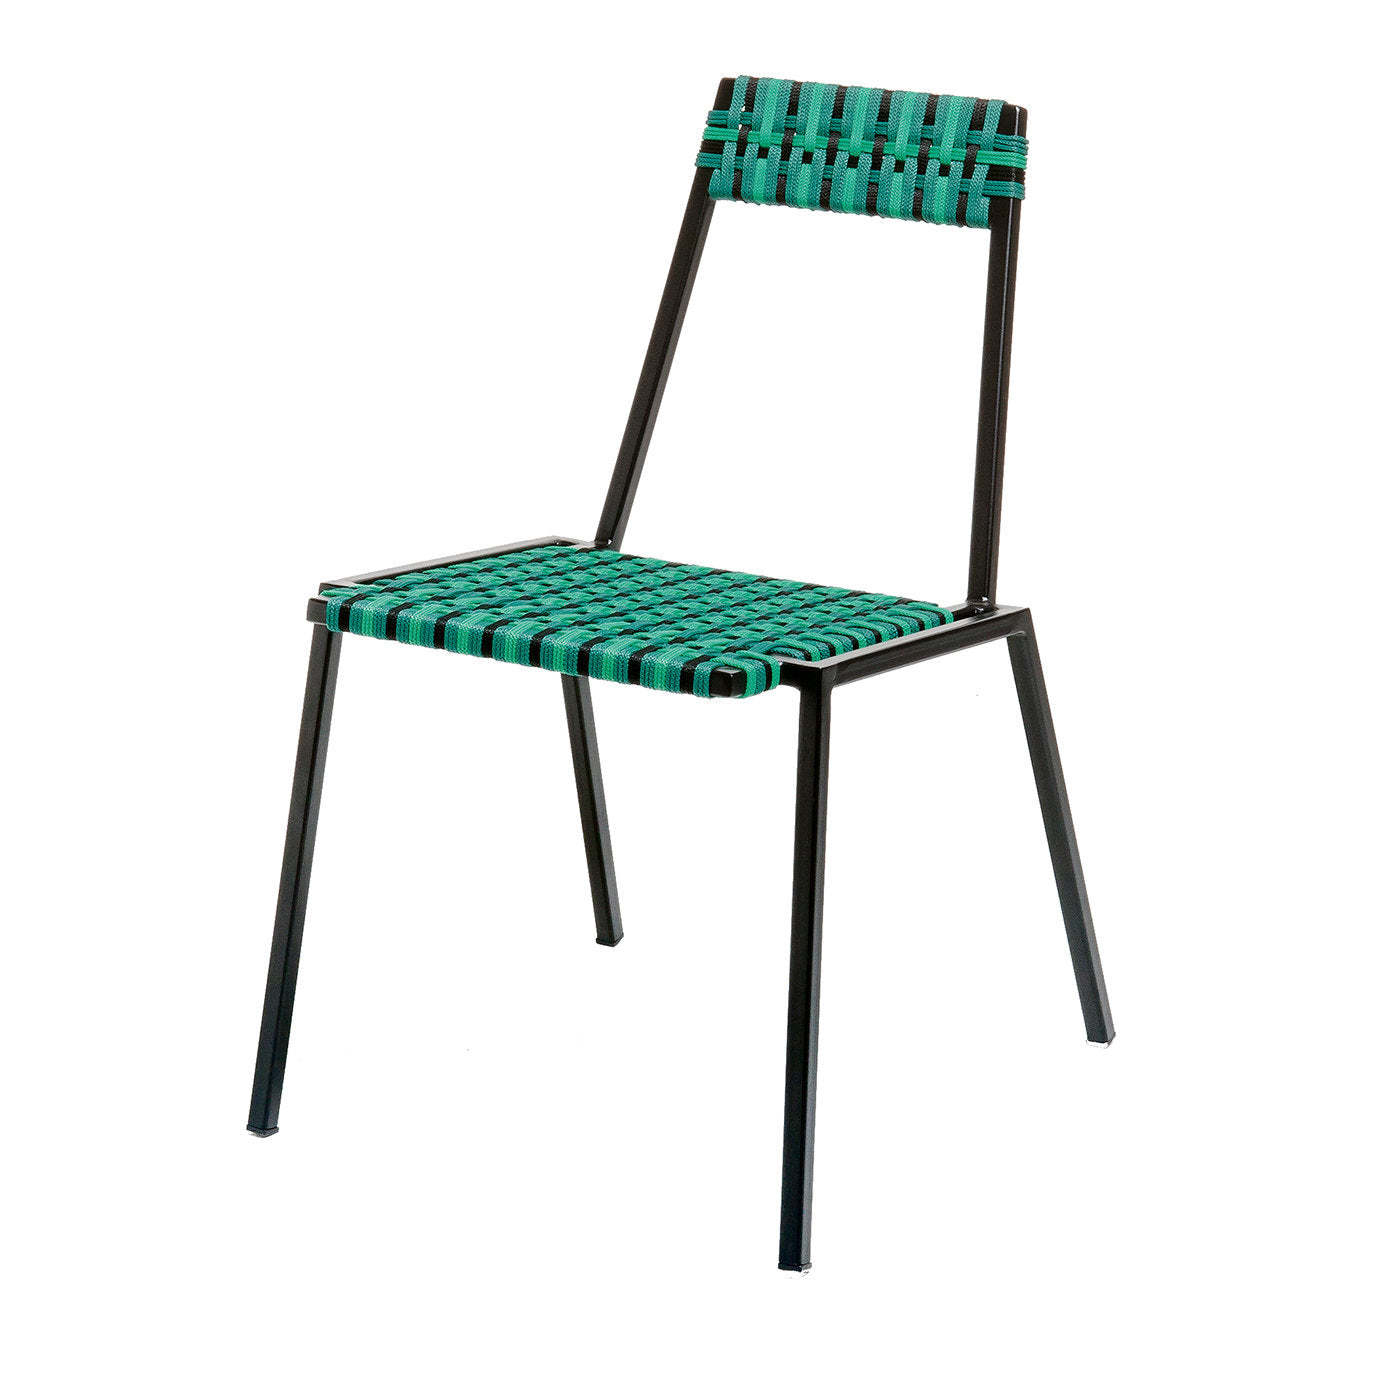 Anita Black/Green Chair - Main view